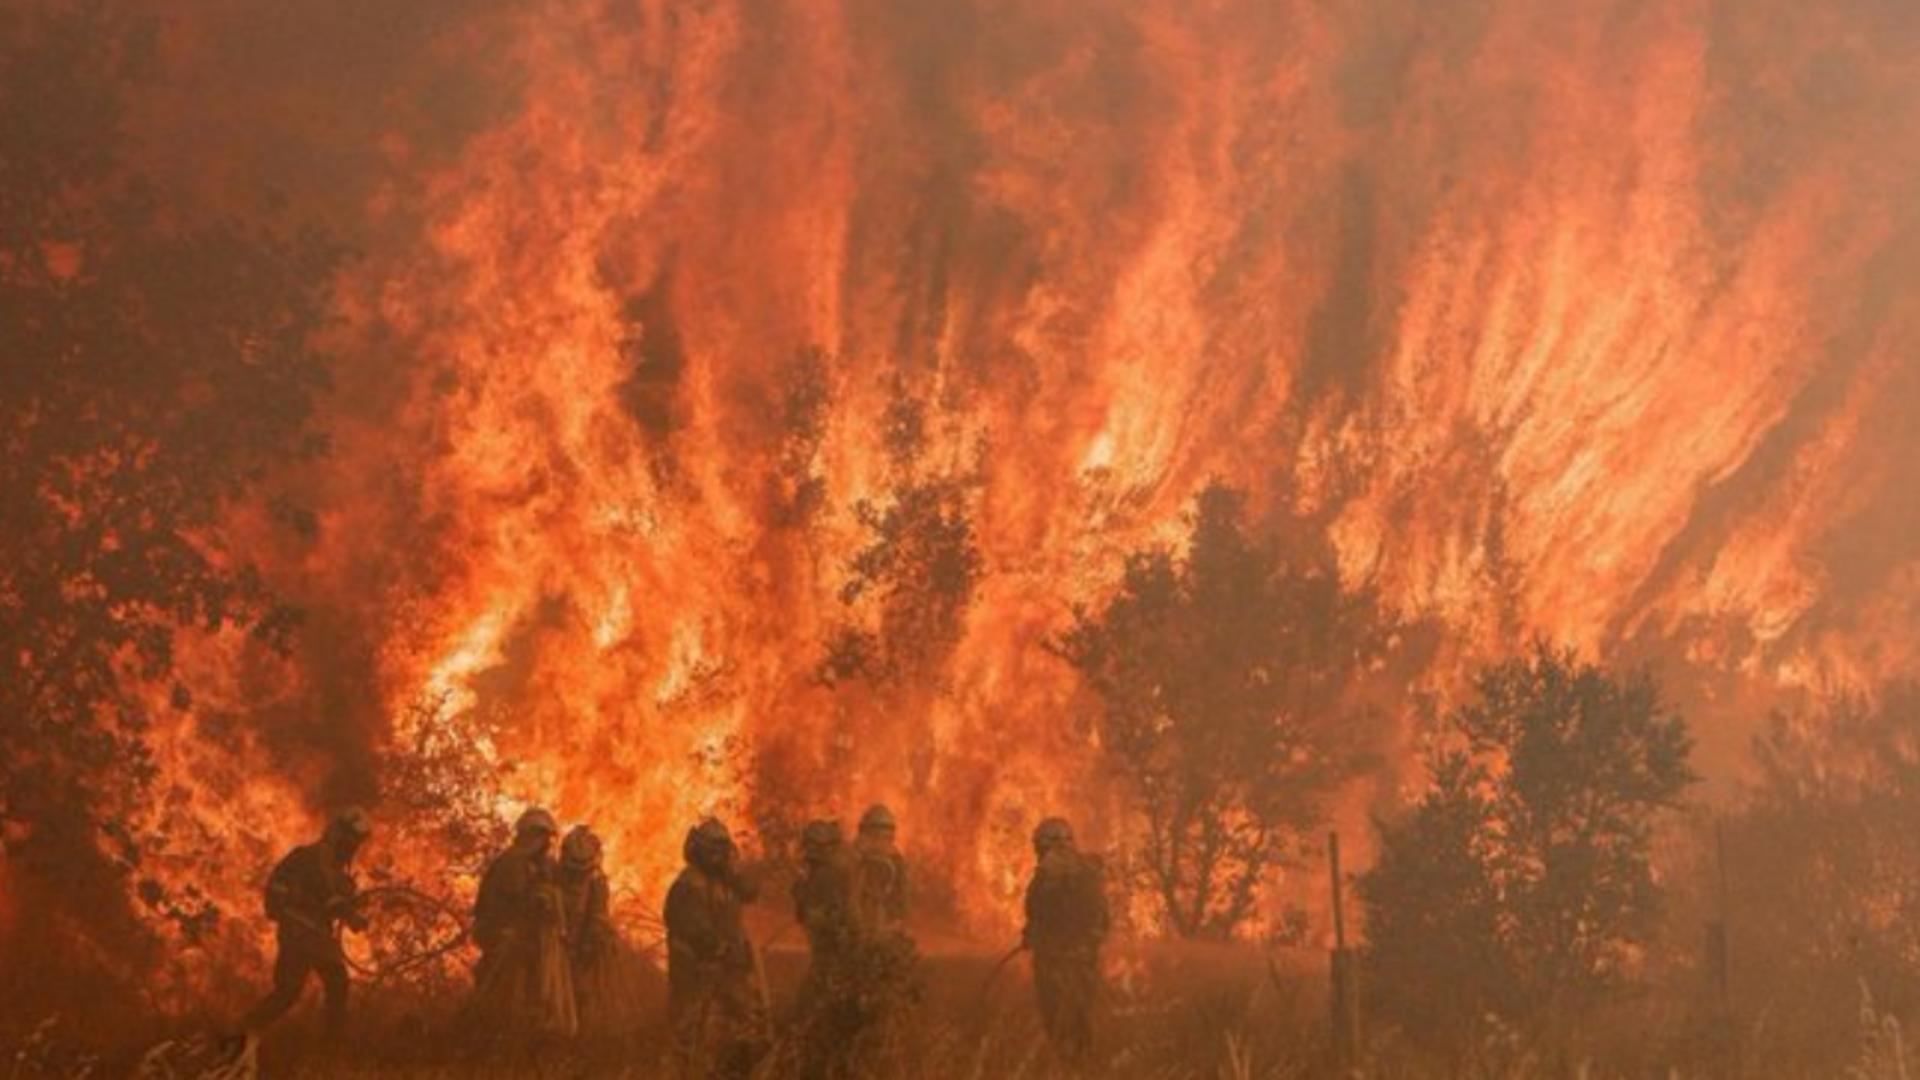 VALUL de căldură lovește Europa! Cel puțin 100 de decese în ultimele zile - Spania, Franța, cele mai afectate de incendii. HARTA 